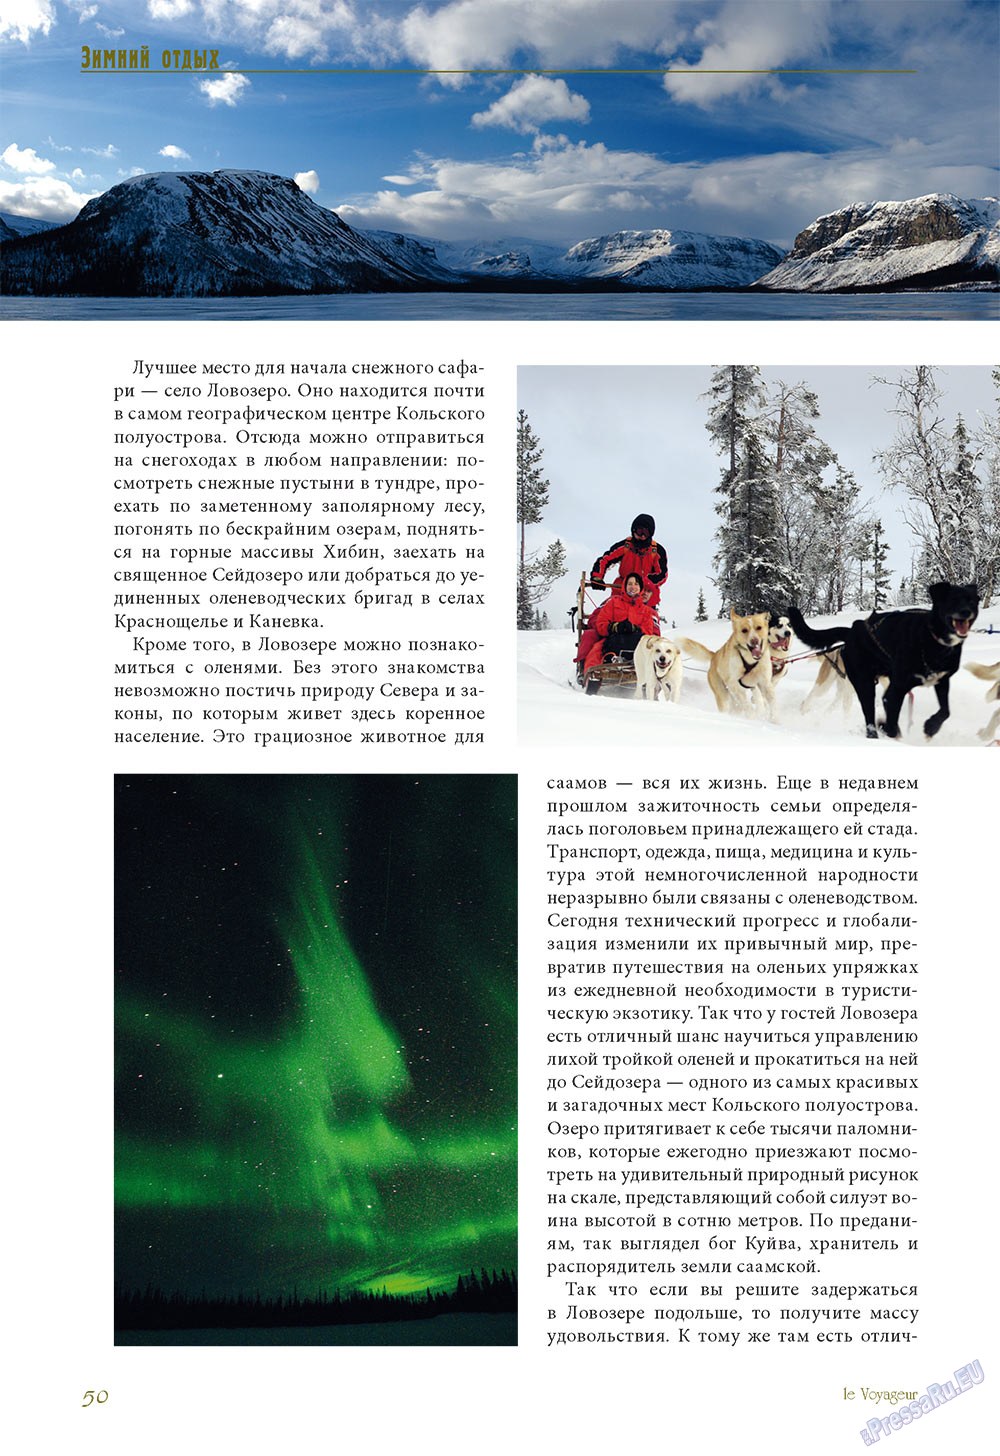 Le Voyageur (журнал). 2010 год, номер 14, стр. 55